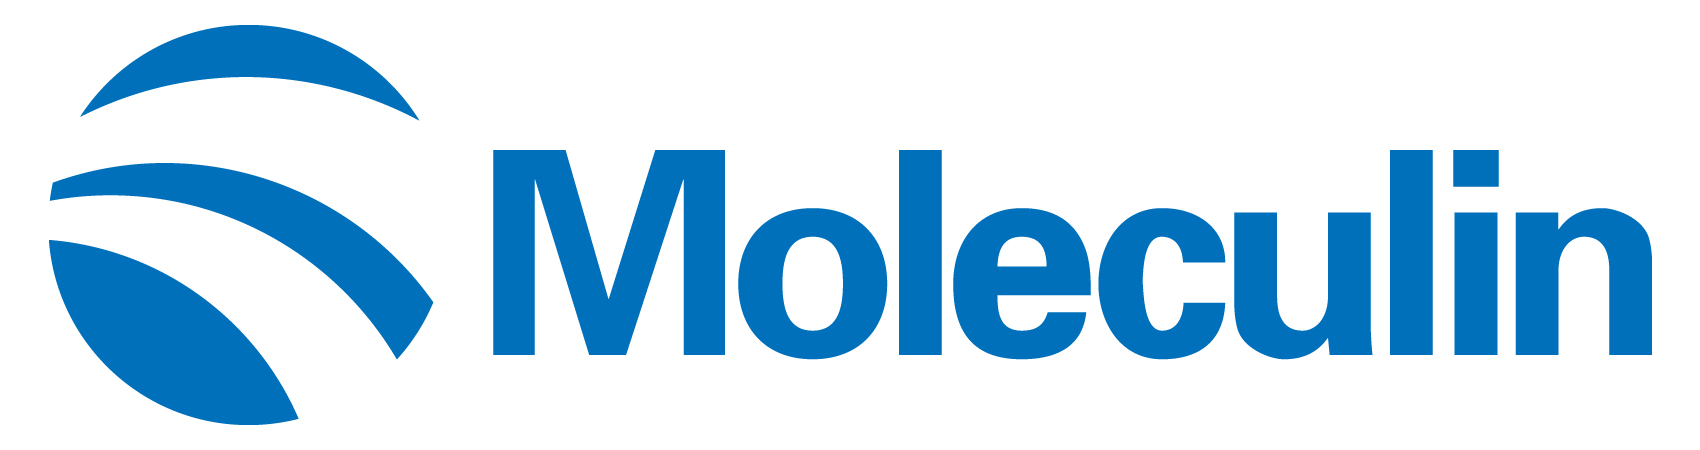 moleculin-logo_horiza50.jpg